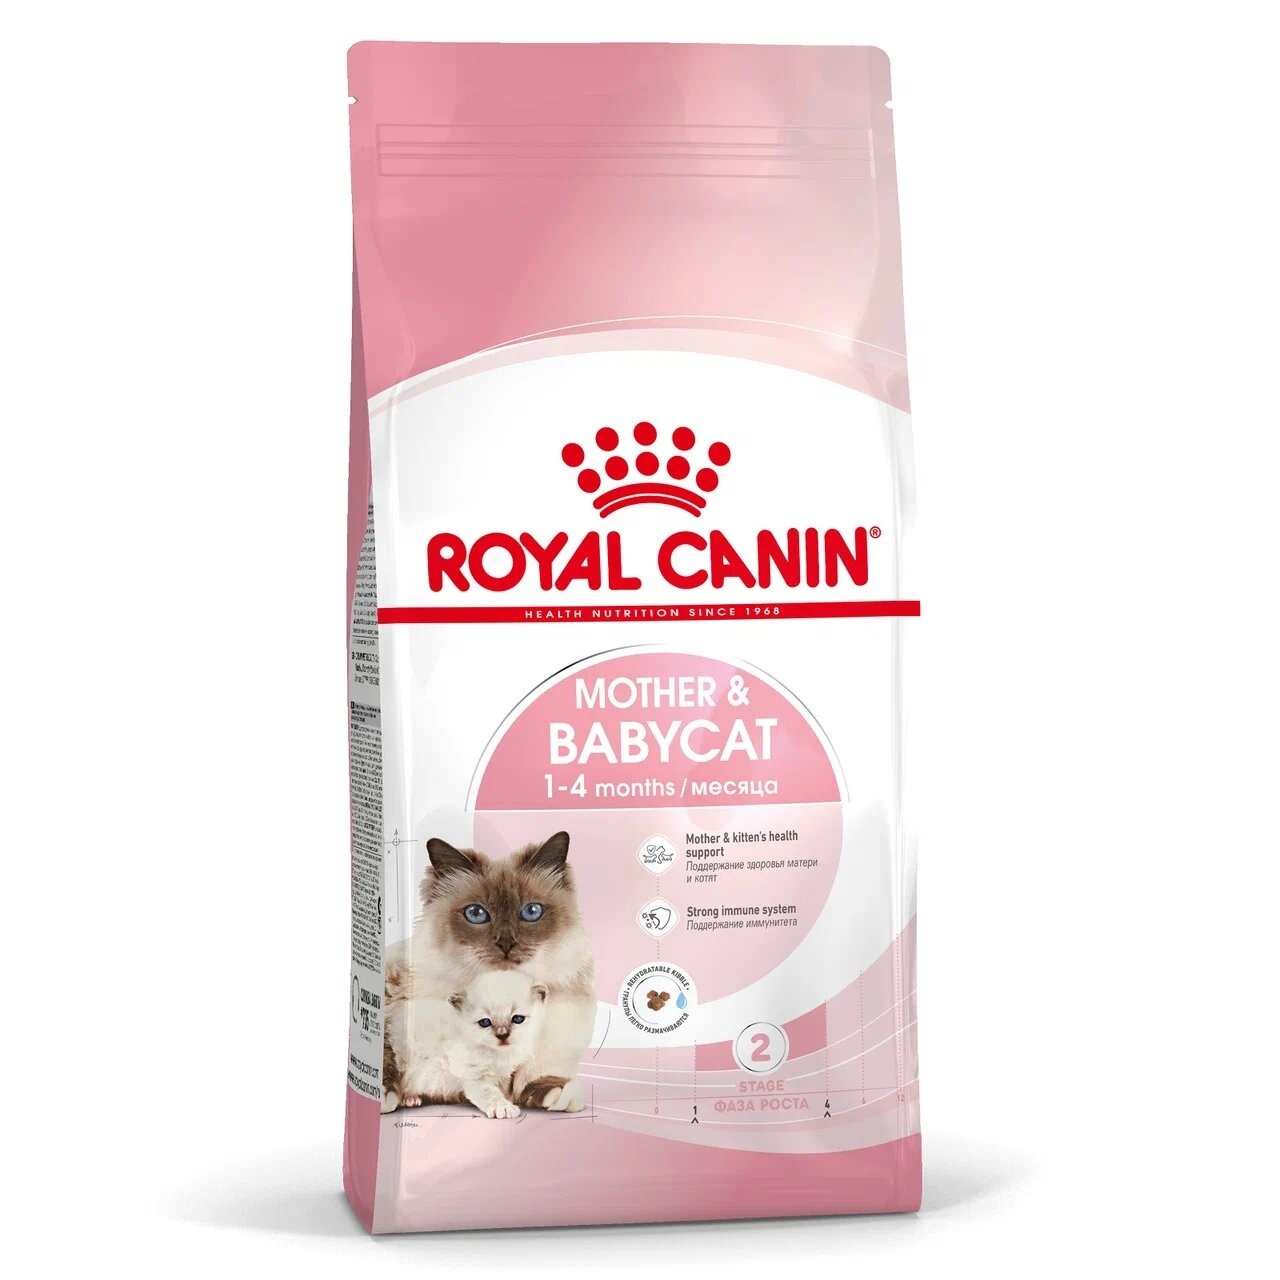 Royal Canin Корм Royal Canin корм для котят 1-4 месяцев и для беременных/лактирующих кошек (2 кг) royal canin корм royal canin корм для котят 1 4 месяцев и для беременных лактирующих кошек 2 кг